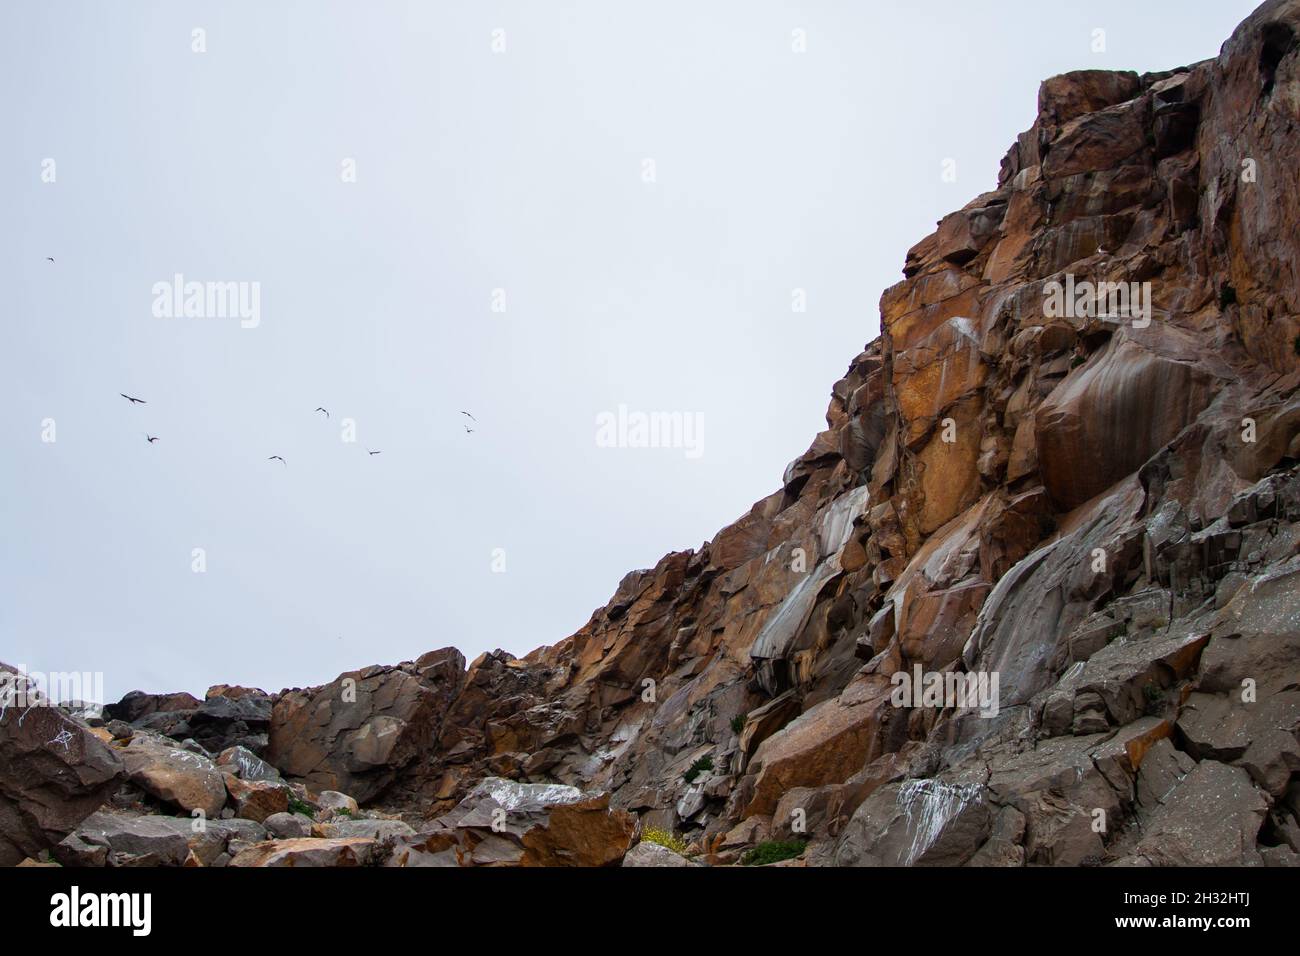 Impresionantes acantilados rocosos altos y cielo | Increíble formaciones rocosas, paredes de acantilados, con aves volando en el cielo en el fondo Foto de stock